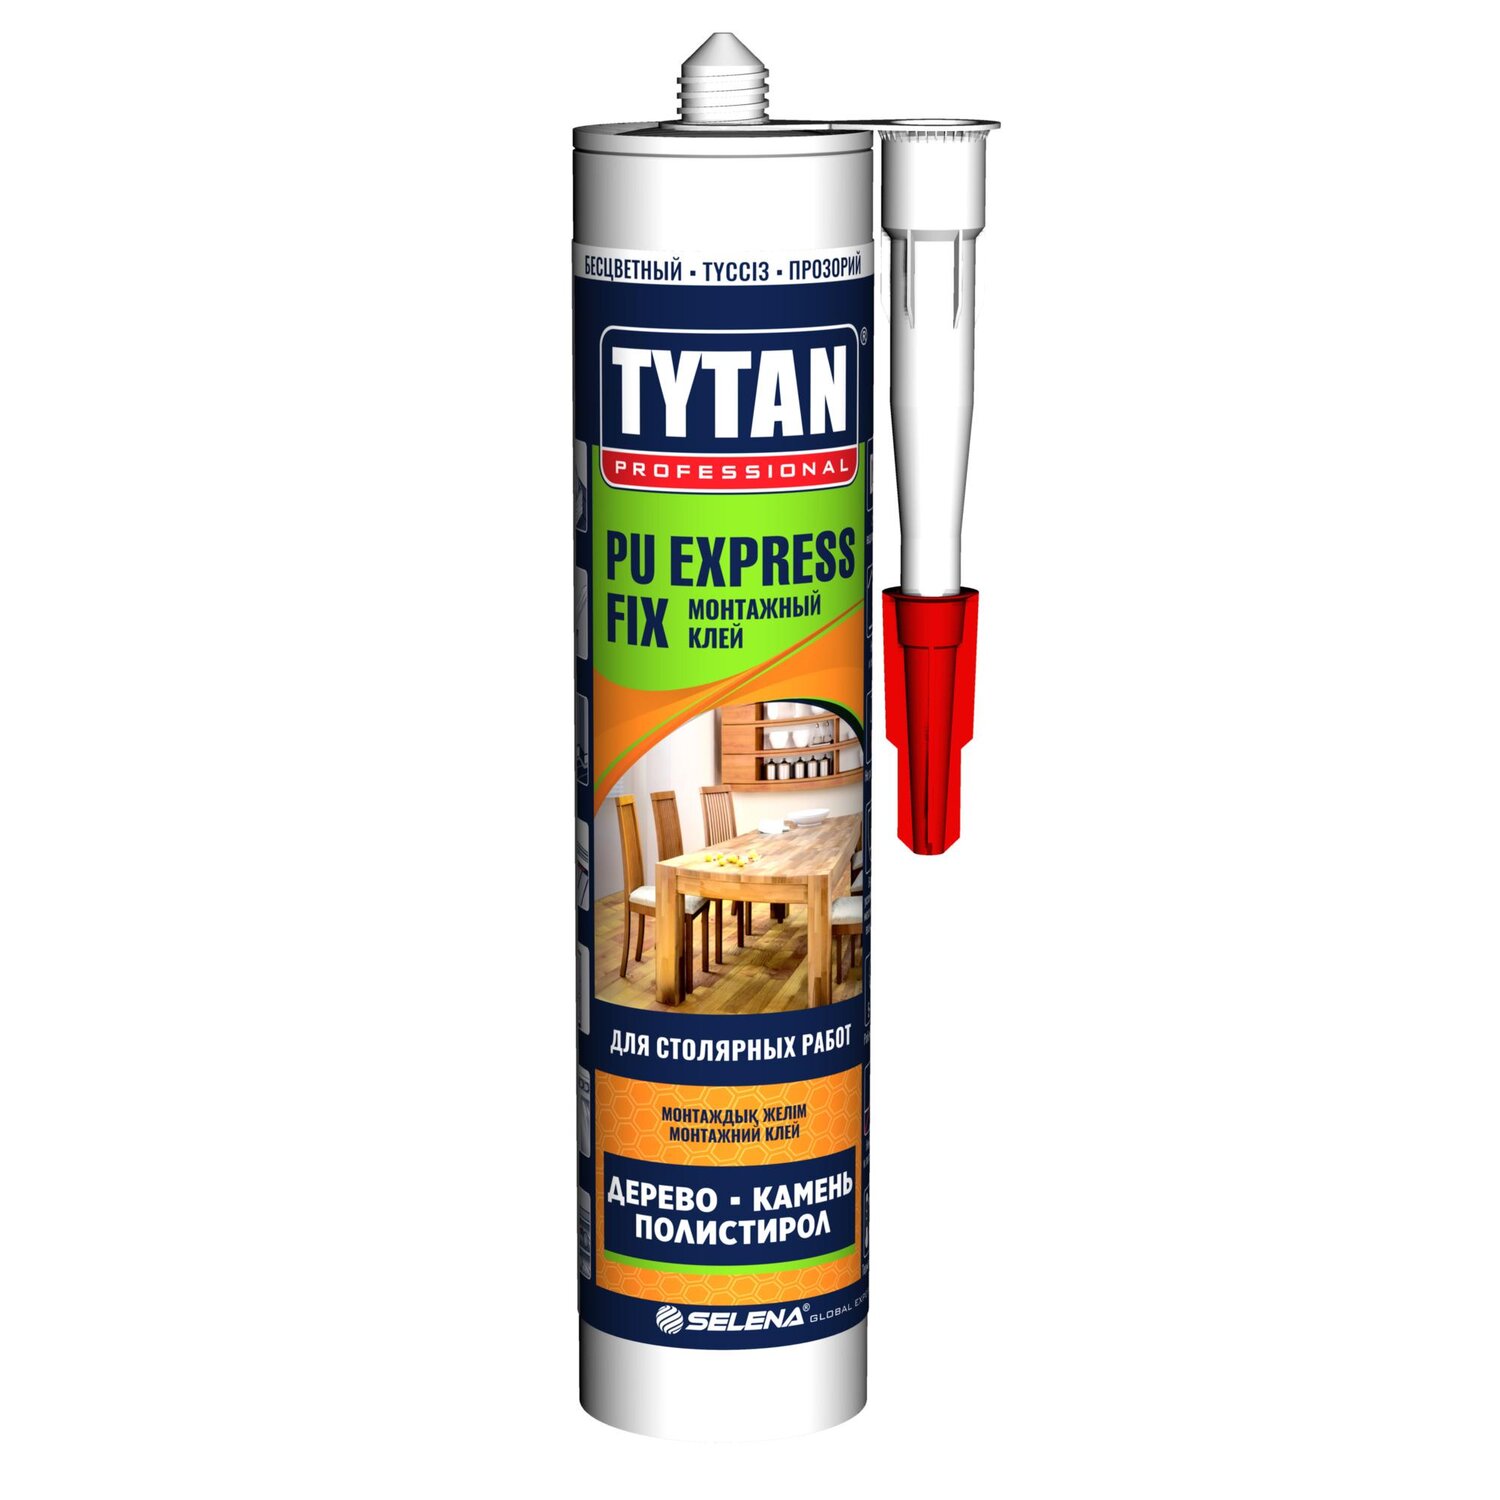 Tytan fix прозрачный. Клей монтажный Tytan Classic Fix, 280 мл, прозрачный. Tytan 901 жидкие гвозди. Монтажный клей Tytan professional Fix. Tytan professional монтажный клей 310 мг. (Для бетона, металла и дерева).